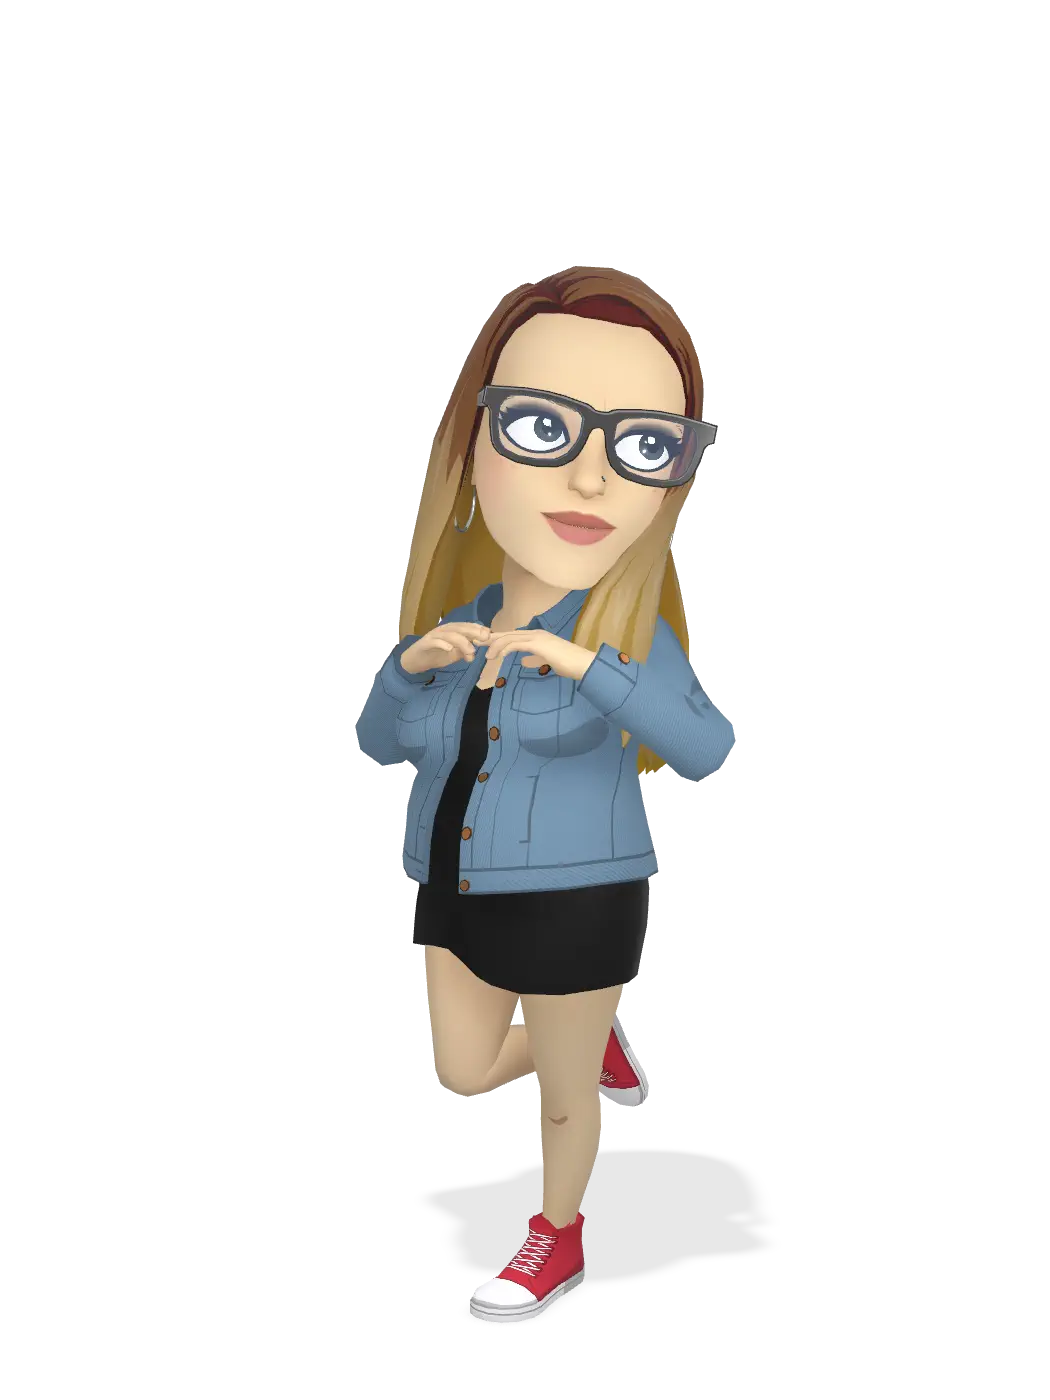 3D Bitmoji for jobadgerfl avatar